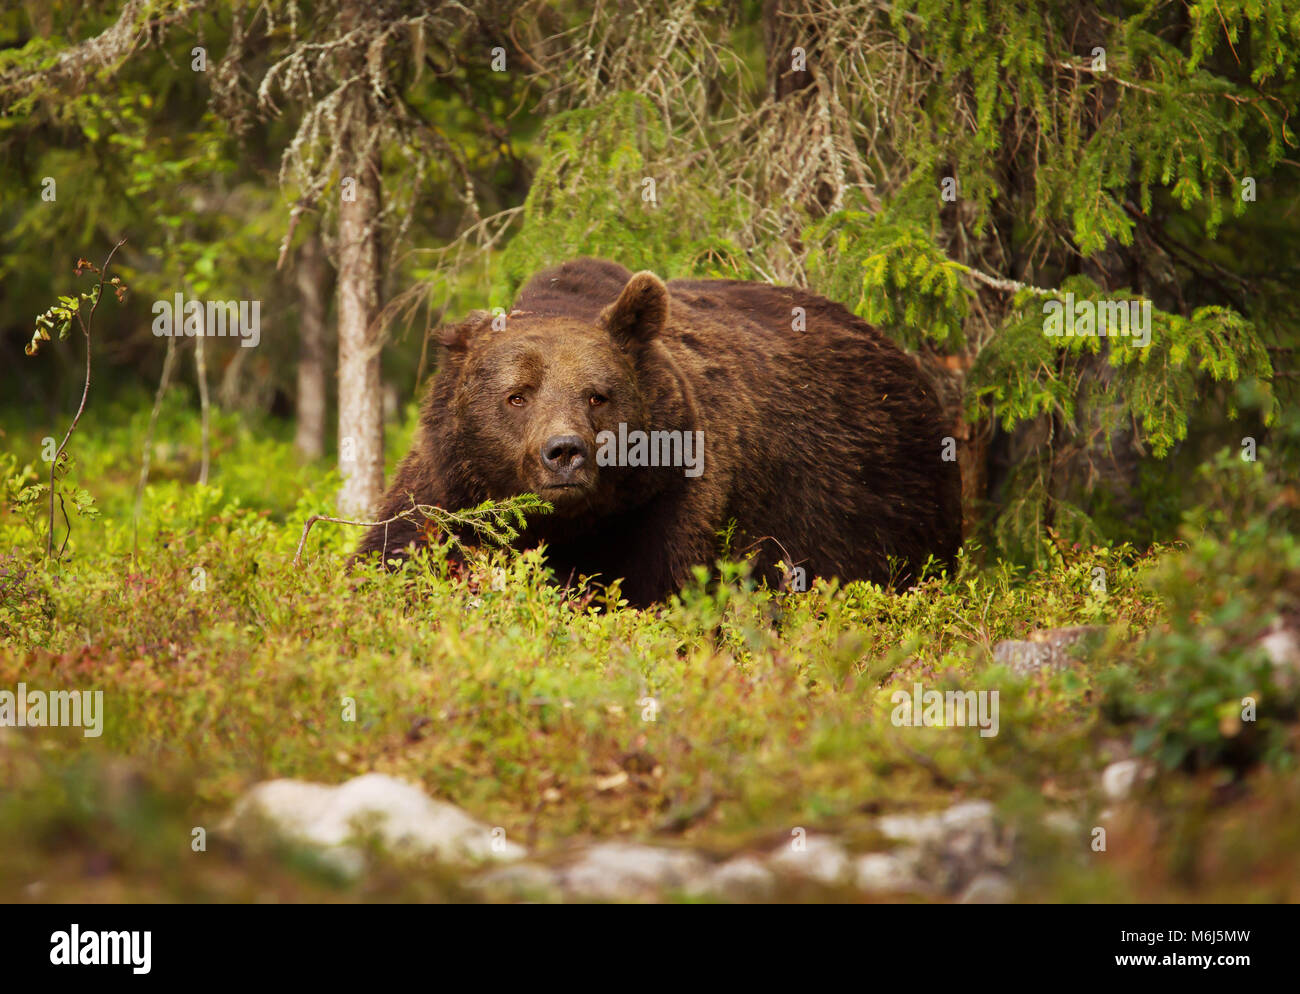 Cerca del oso pardo europeo macho en el bosque boreal, Finlandia. Foto de stock